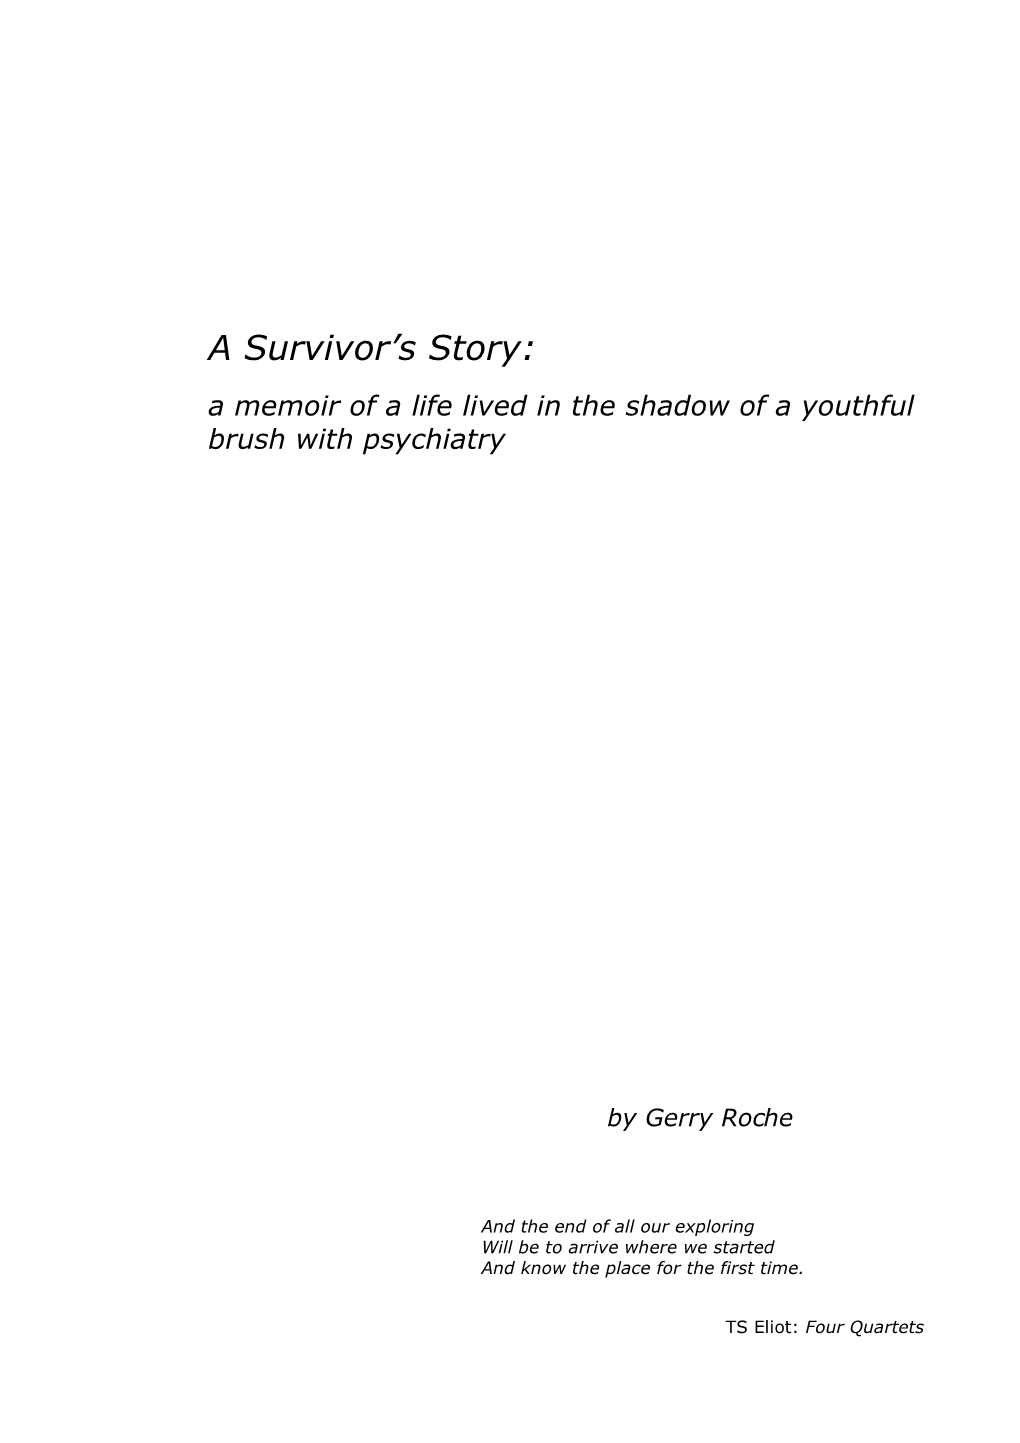 Gerry Roche "A Memoir"